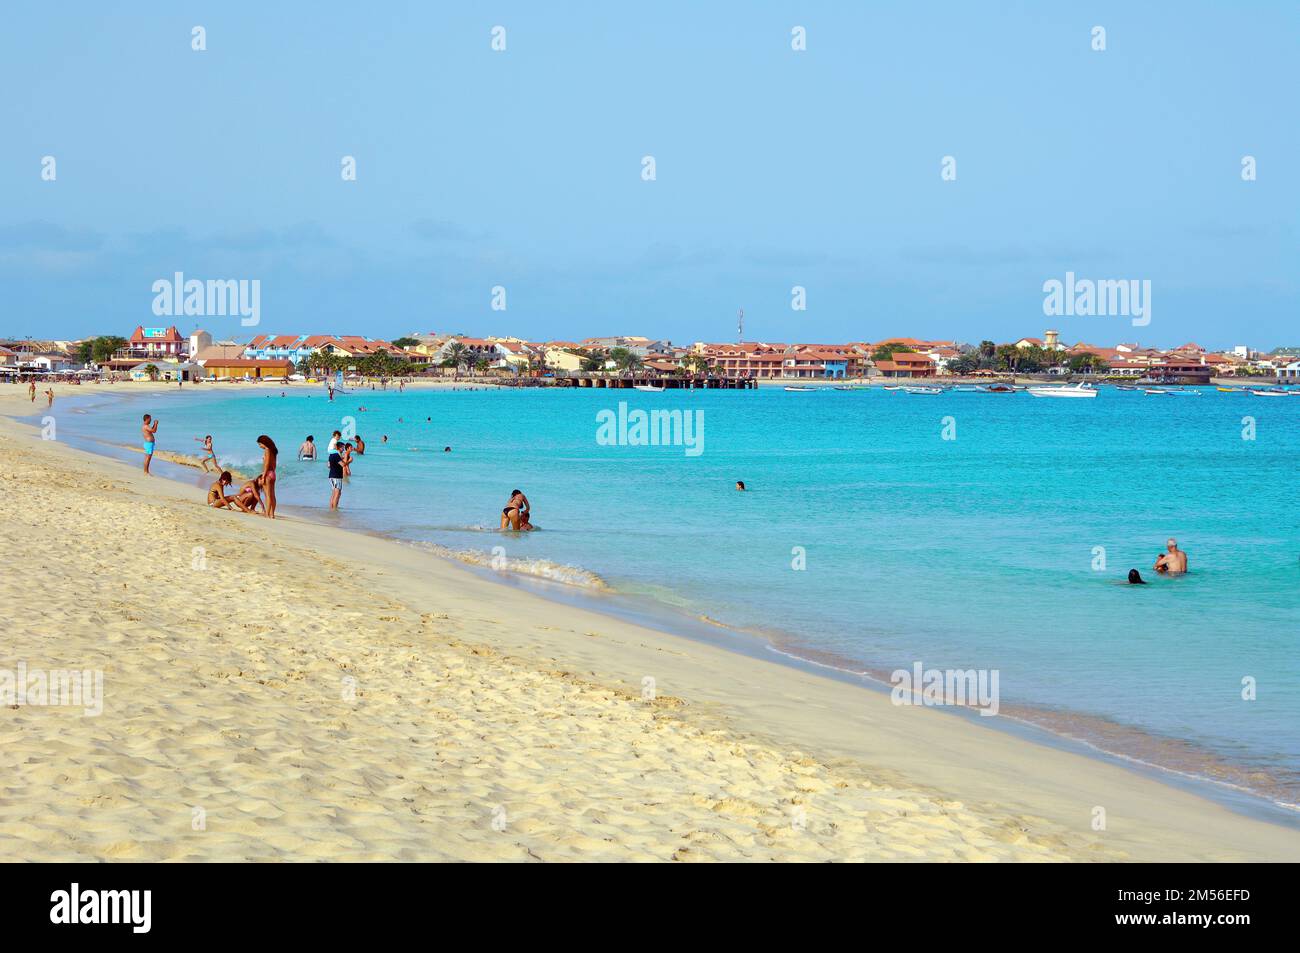 Urlauber Planschen baden im Meer vor Sandstrand Strand, im hintergrund Hotelanlage, Insel Sal, Kapverdische Inseln, Kapverden Banque D'Images